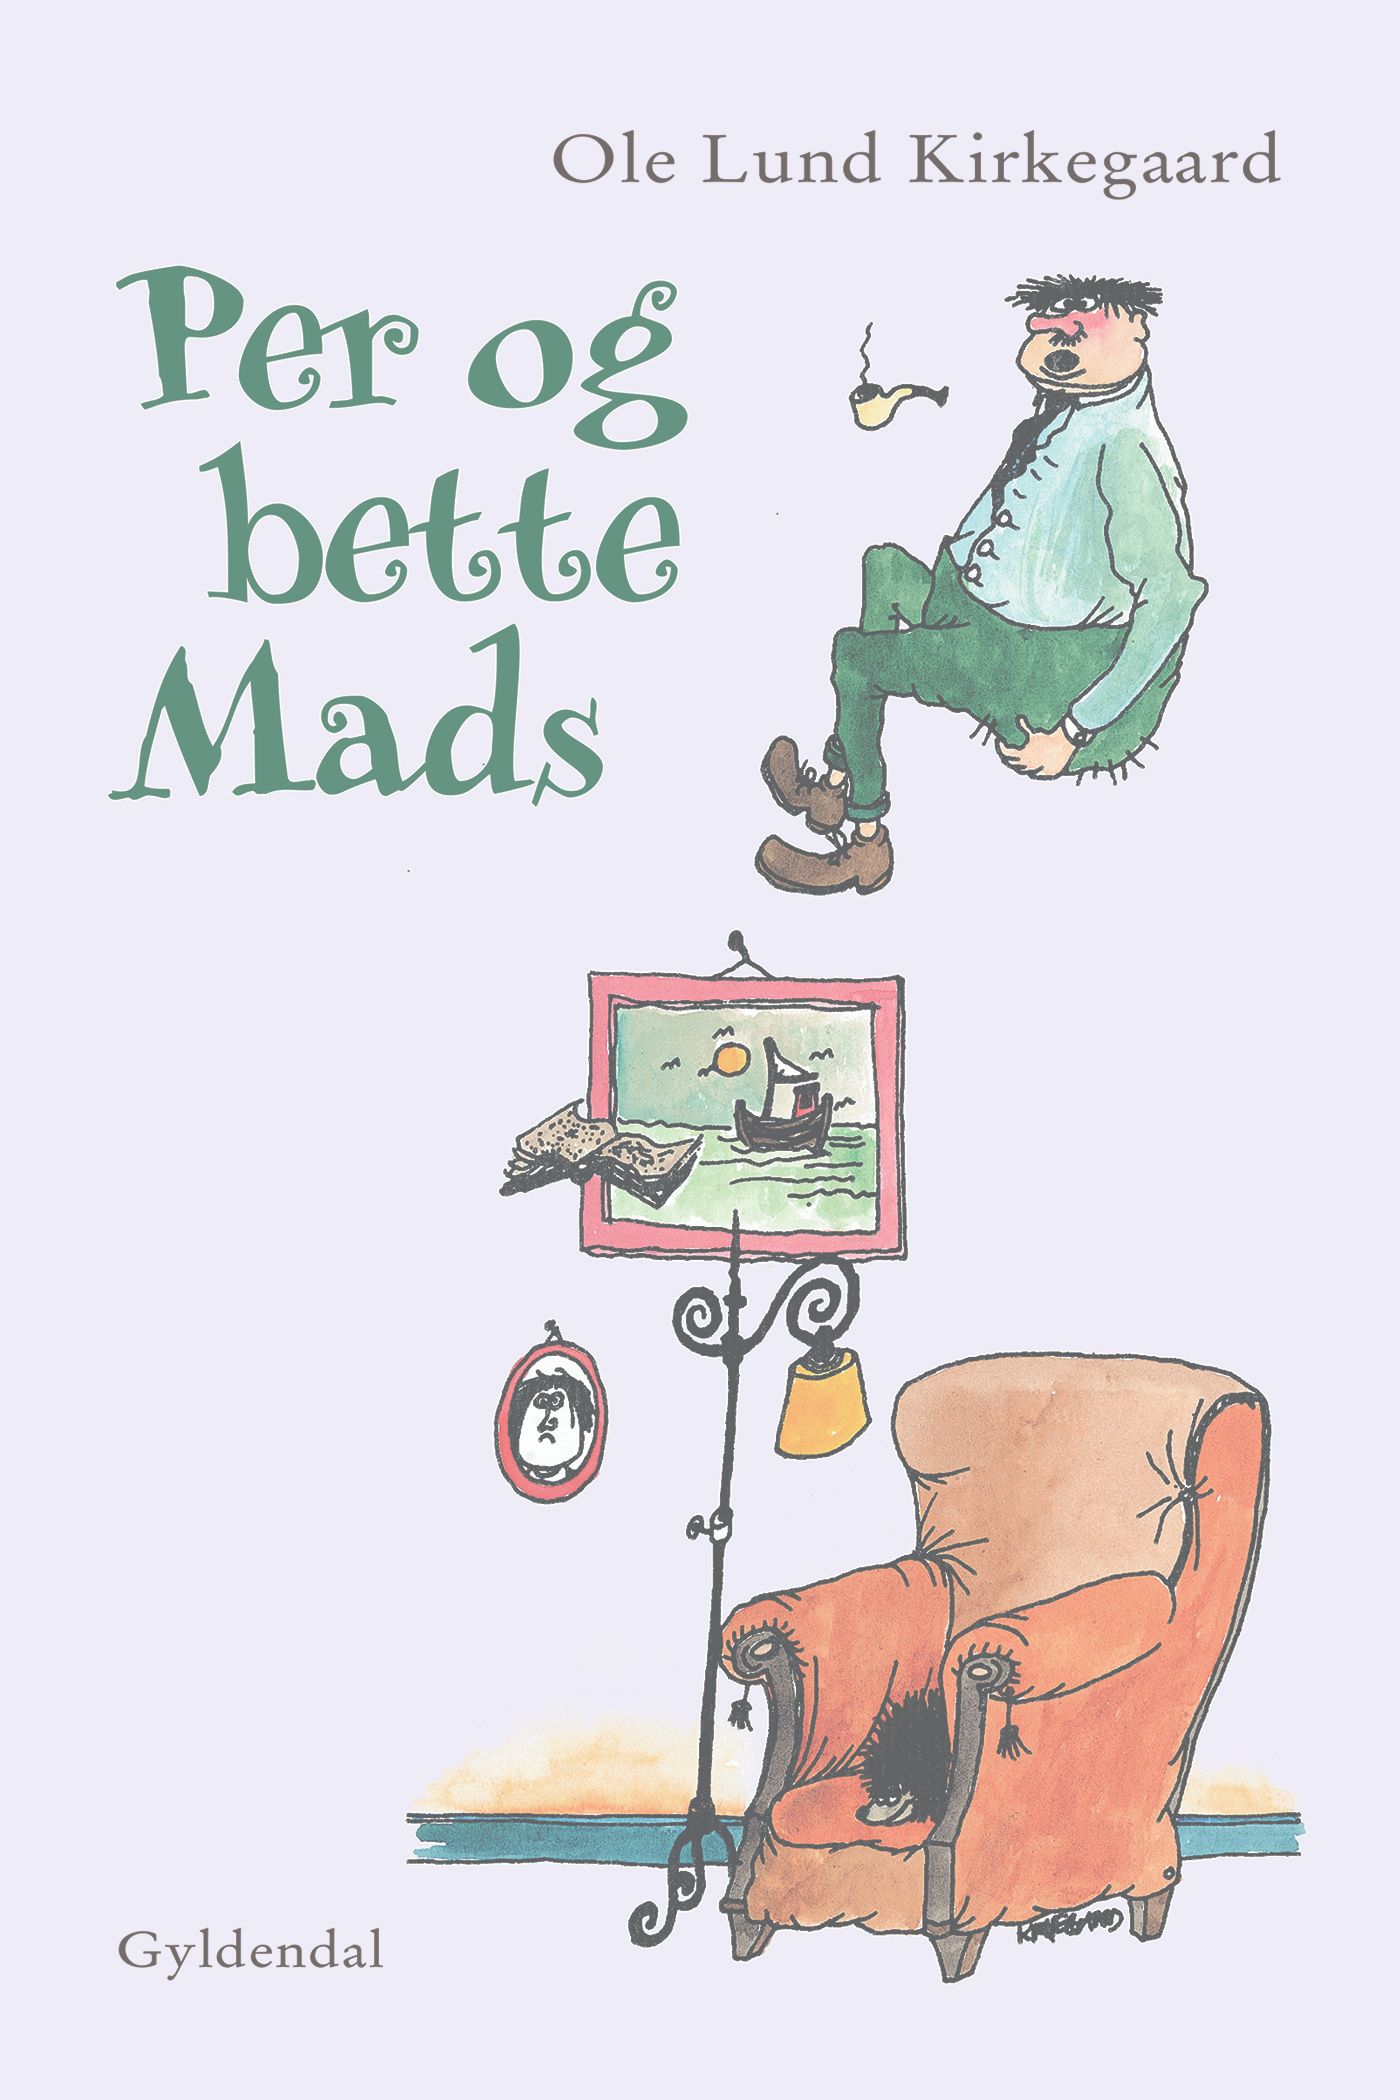 Per og bette Mads, eBook by Ole Lund Kirkegaard